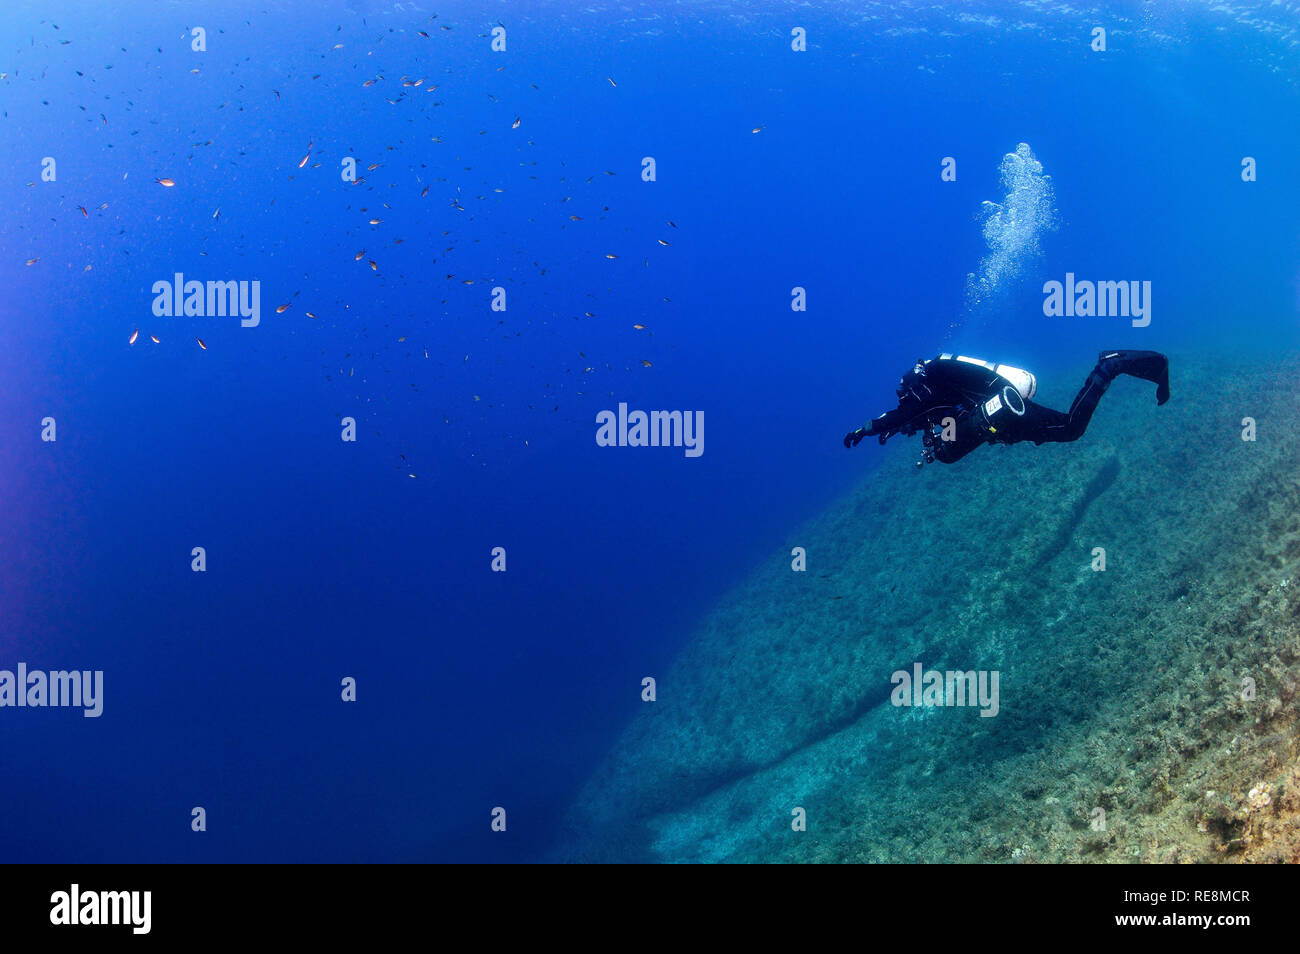 Technical Scuba Diving in Gozo, Malta Stock Photo